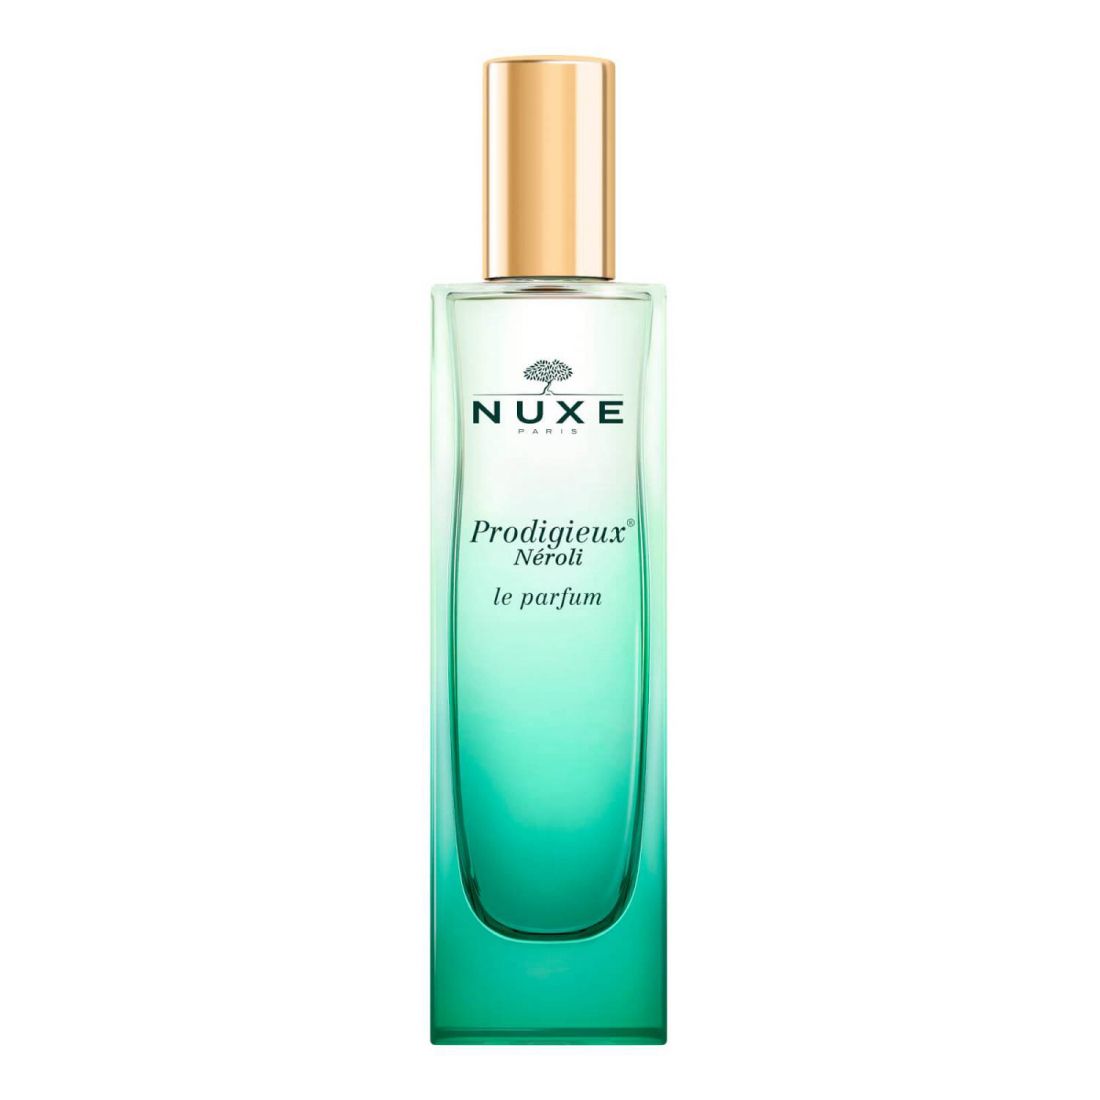 Nuxe - Eau de parfum 'Prodigieux® Néroli' - 50 ml